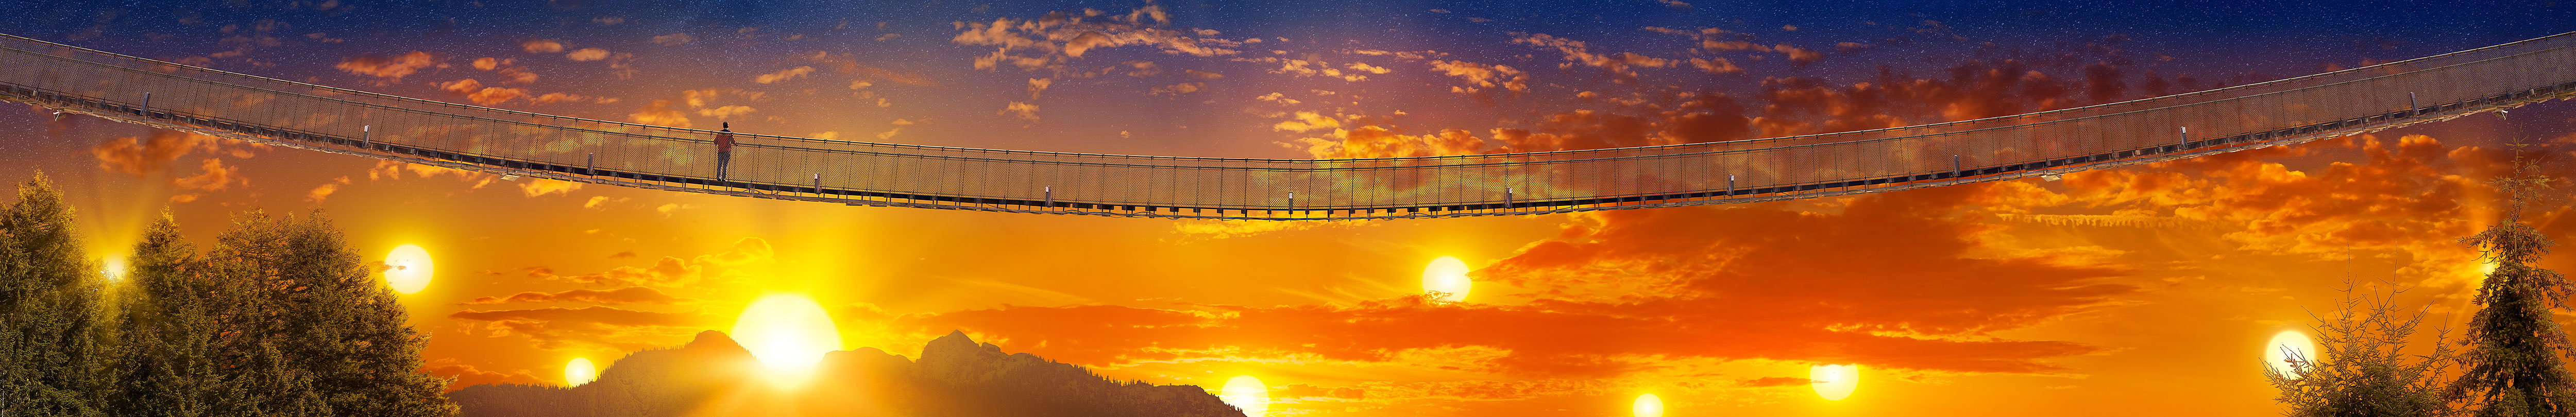 Capilano Suspension Bridge - Sunsets